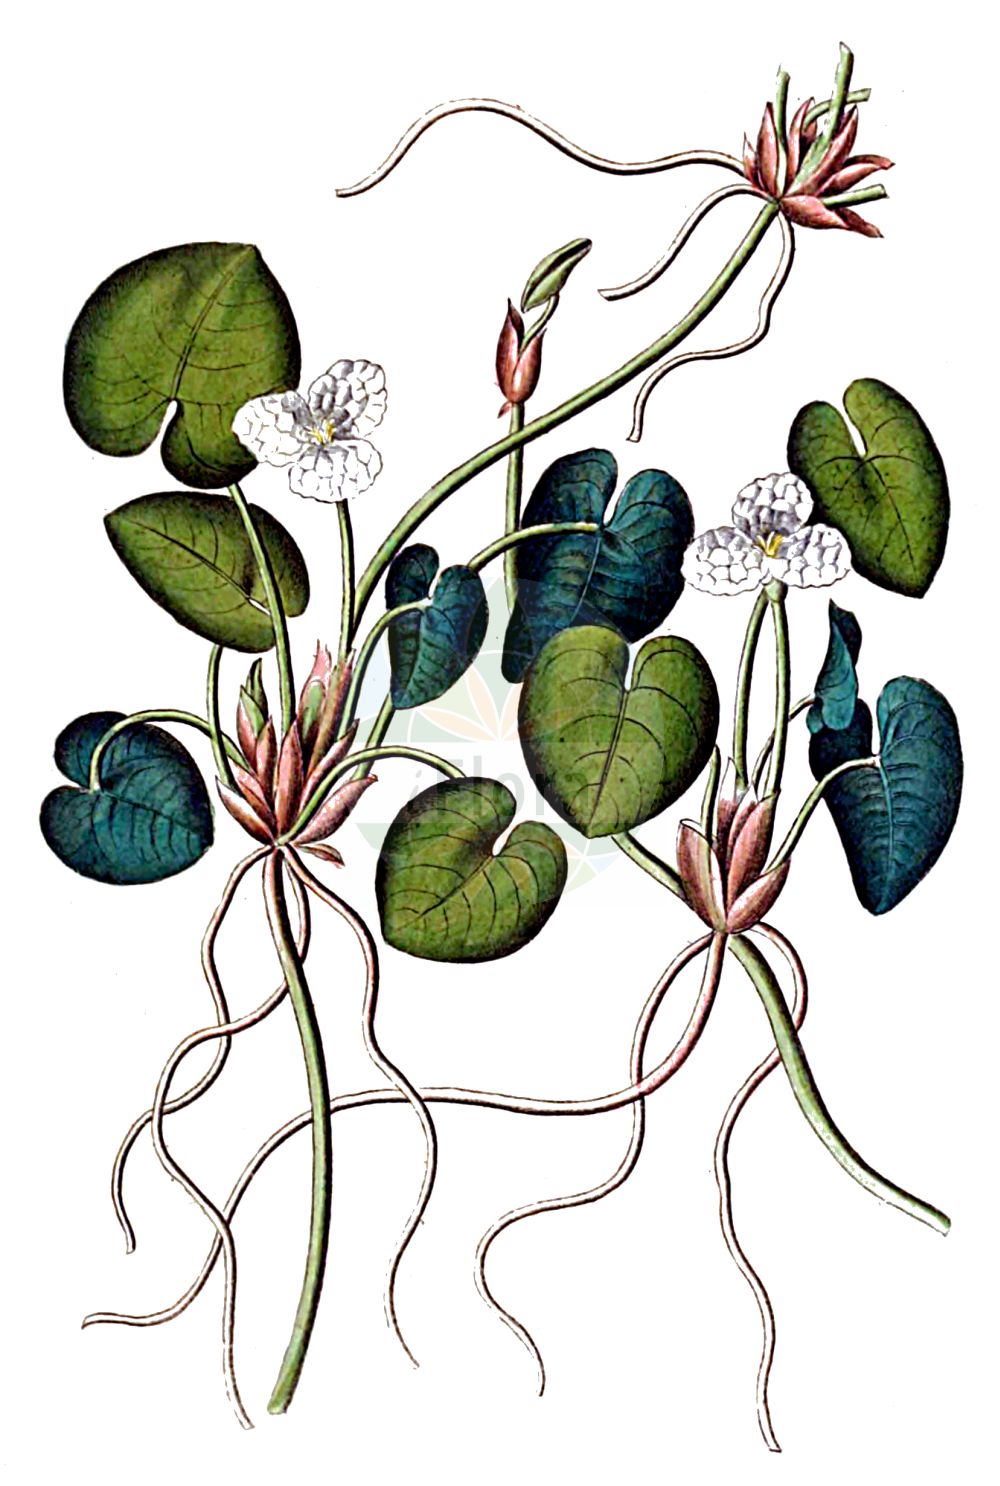 Historische Abbildung von Hydrocharis morsus-ranae (Europäischer Froschbiß - Frogbit). Das Bild zeigt Blatt, Bluete, Frucht und Same. ---- Historical Drawing of Hydrocharis morsus-ranae (Europäischer Froschbiß - Frogbit). The image is showing leaf, flower, fruit and seed.(Hydrocharis morsus-ranae,Europäischer Froschbiß,Frogbit,Hydrocharis morsus-ranae,Europaeischer Froschbiss,Froschbiss,Frogbit,European Frogbit,Common Frogbit,Hydrocharis,Froschbiß,Frogbit,Hydrocharitaceae,Froschbissgewächse,Frogbit family,Blatt,Bluete,Frucht,Same,leaf,flower,fruit,seed,Dietrich (1833-1844))